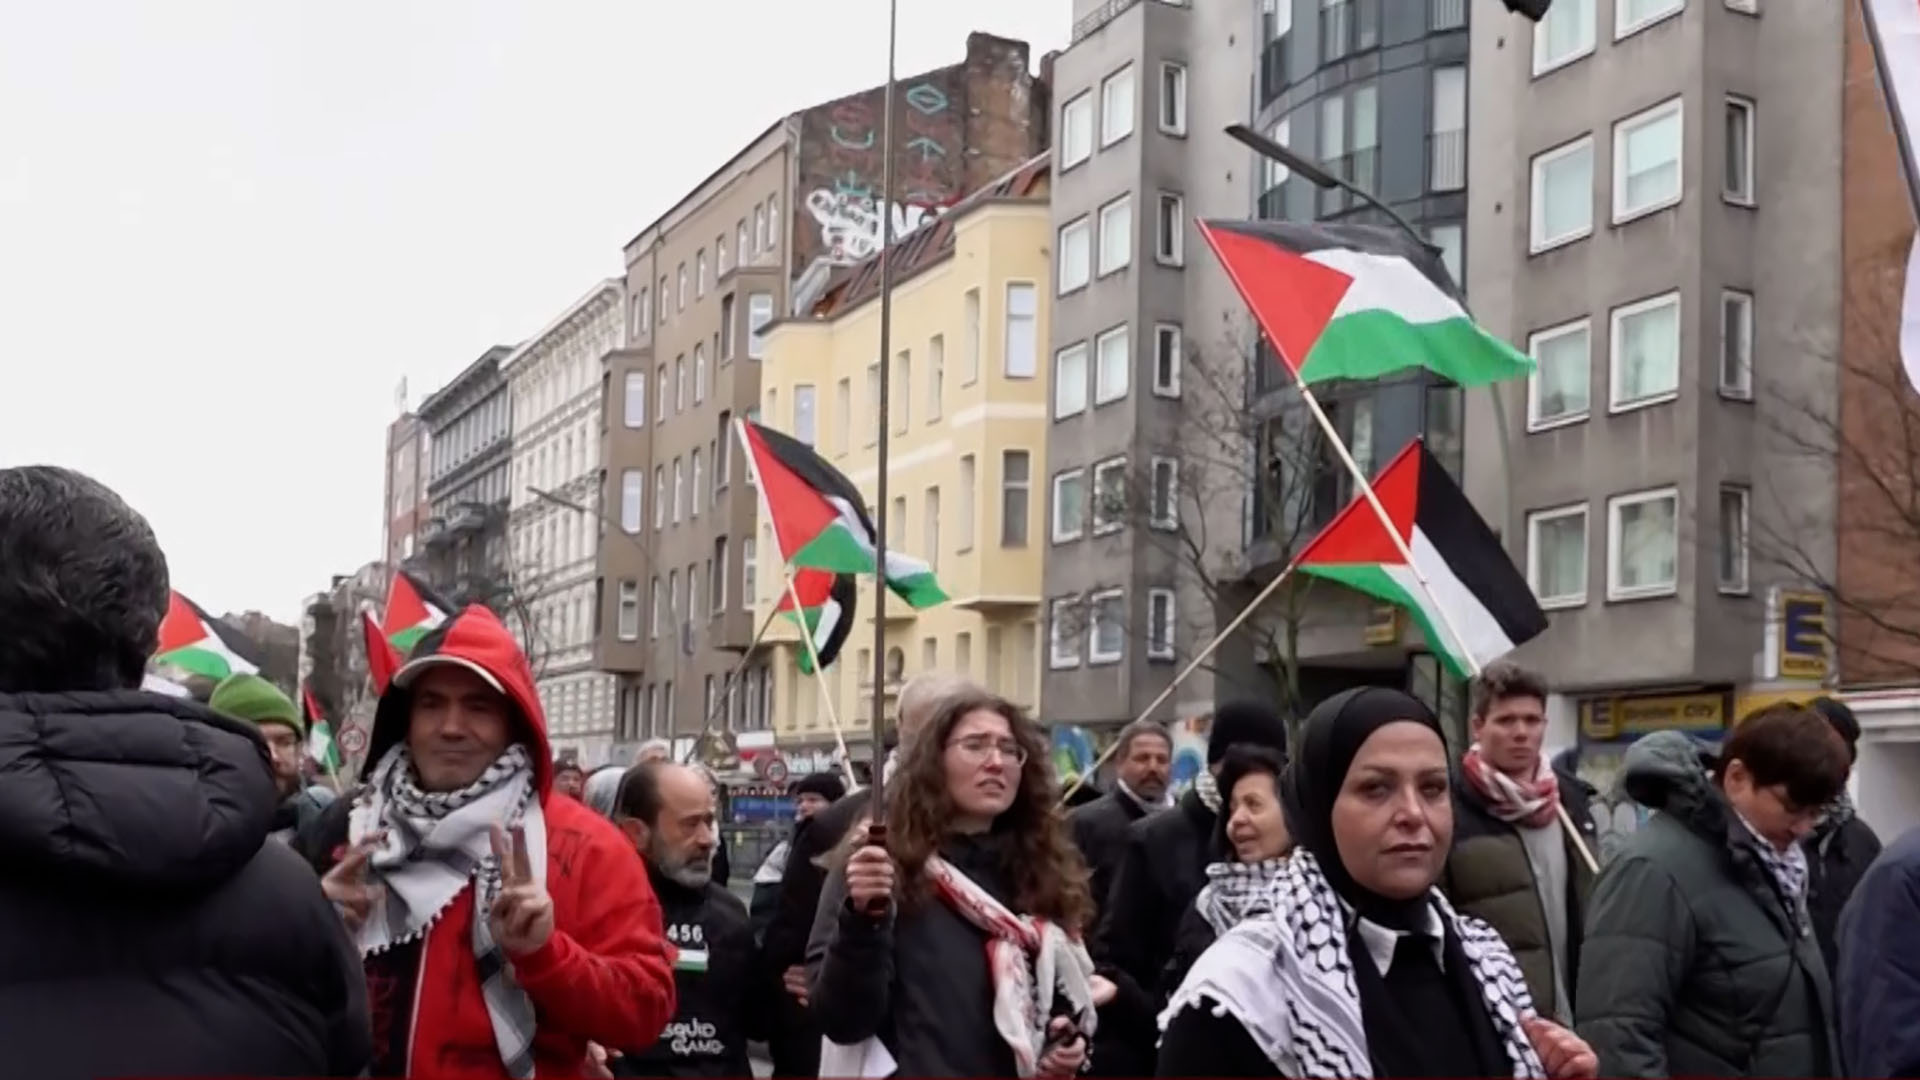 مظاهرة ببرلين تندد بالحرب الإسرائيلية على غزة وتطالب بوقف إطلاق النار | التقارير الإخبارية – البوكس نيوز